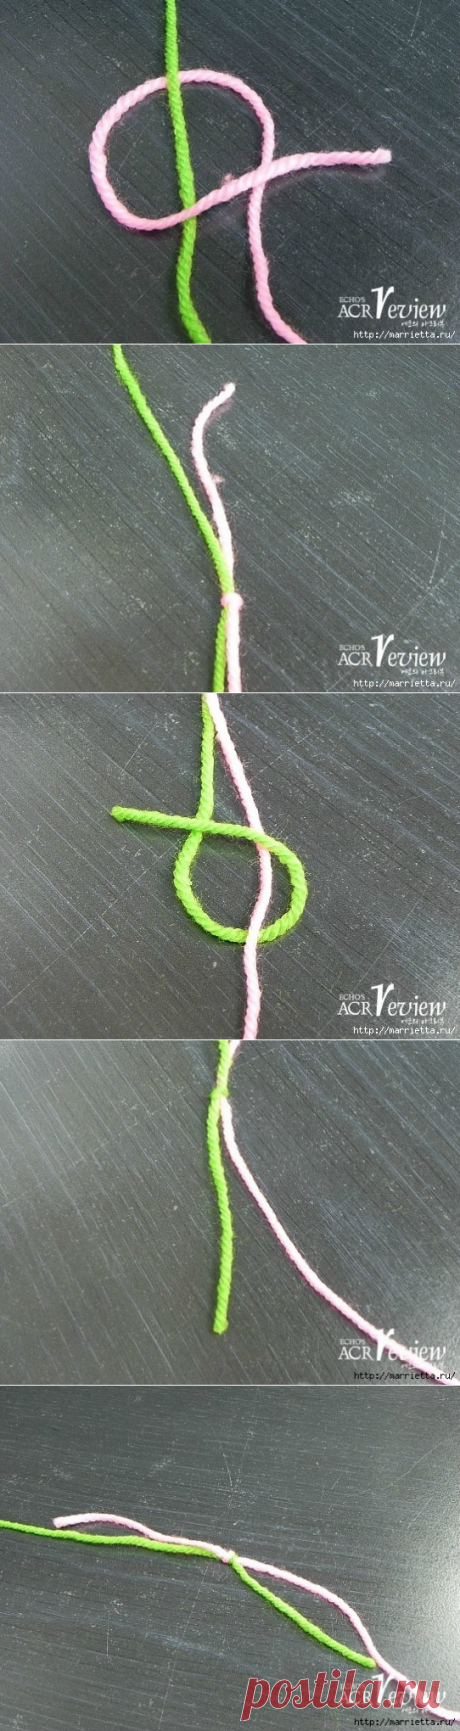 Способ соединения нитей при вязании крючком и спицами. Мастер-класс в картинках - Nebka.Ru